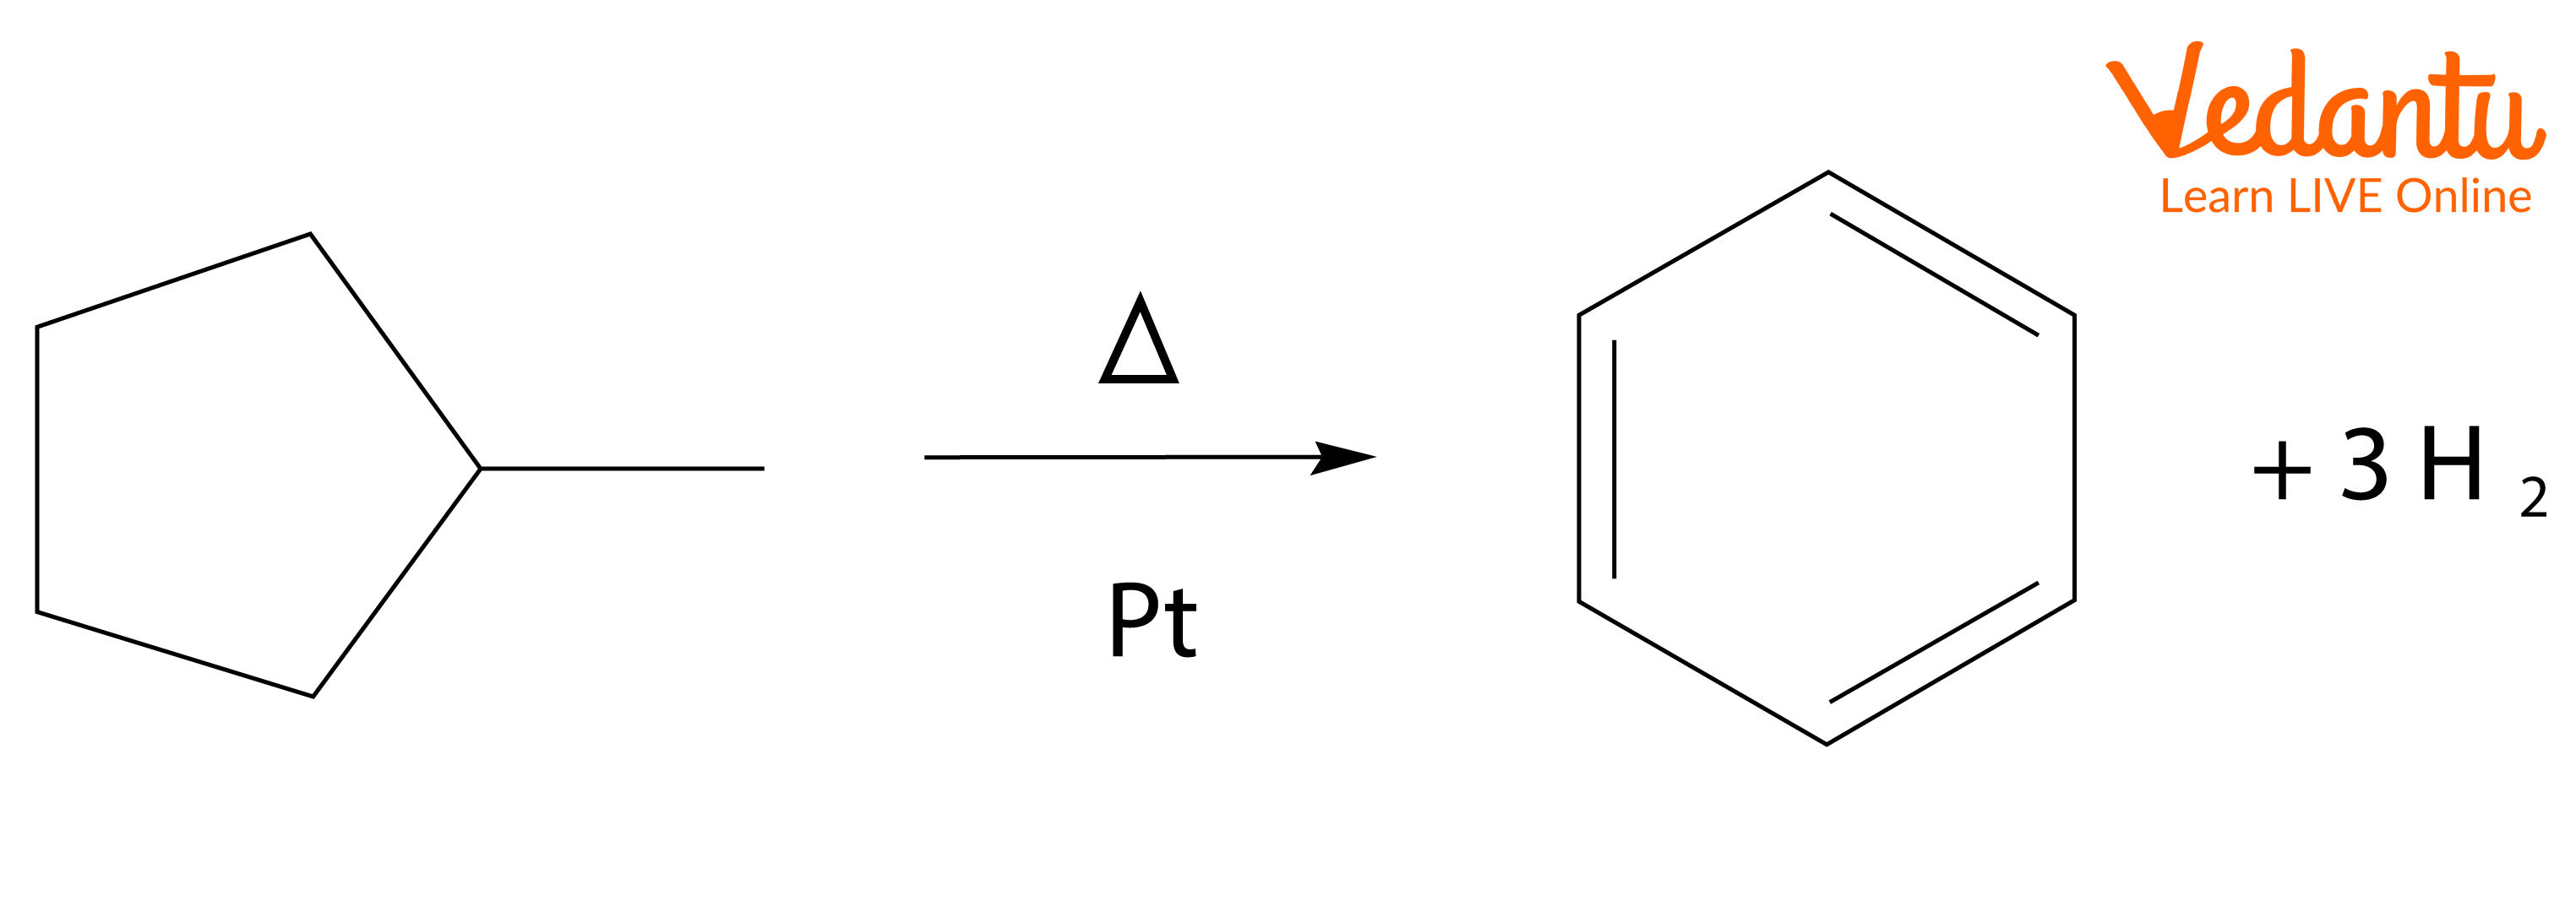 aromatisation reaction starting with methylcyclopentane